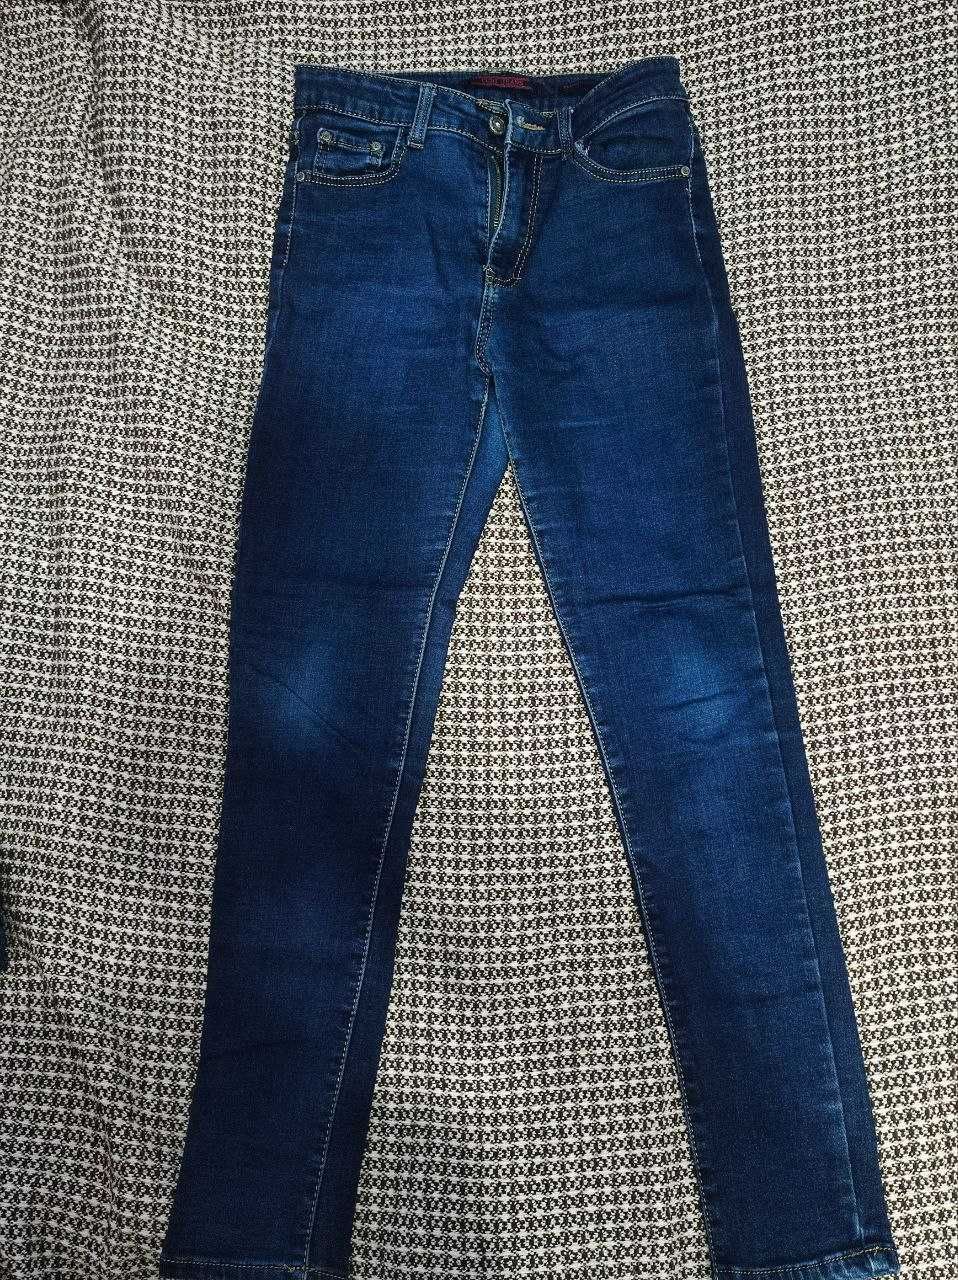 Жіночі джинси 36 розміру CUSI JEANS